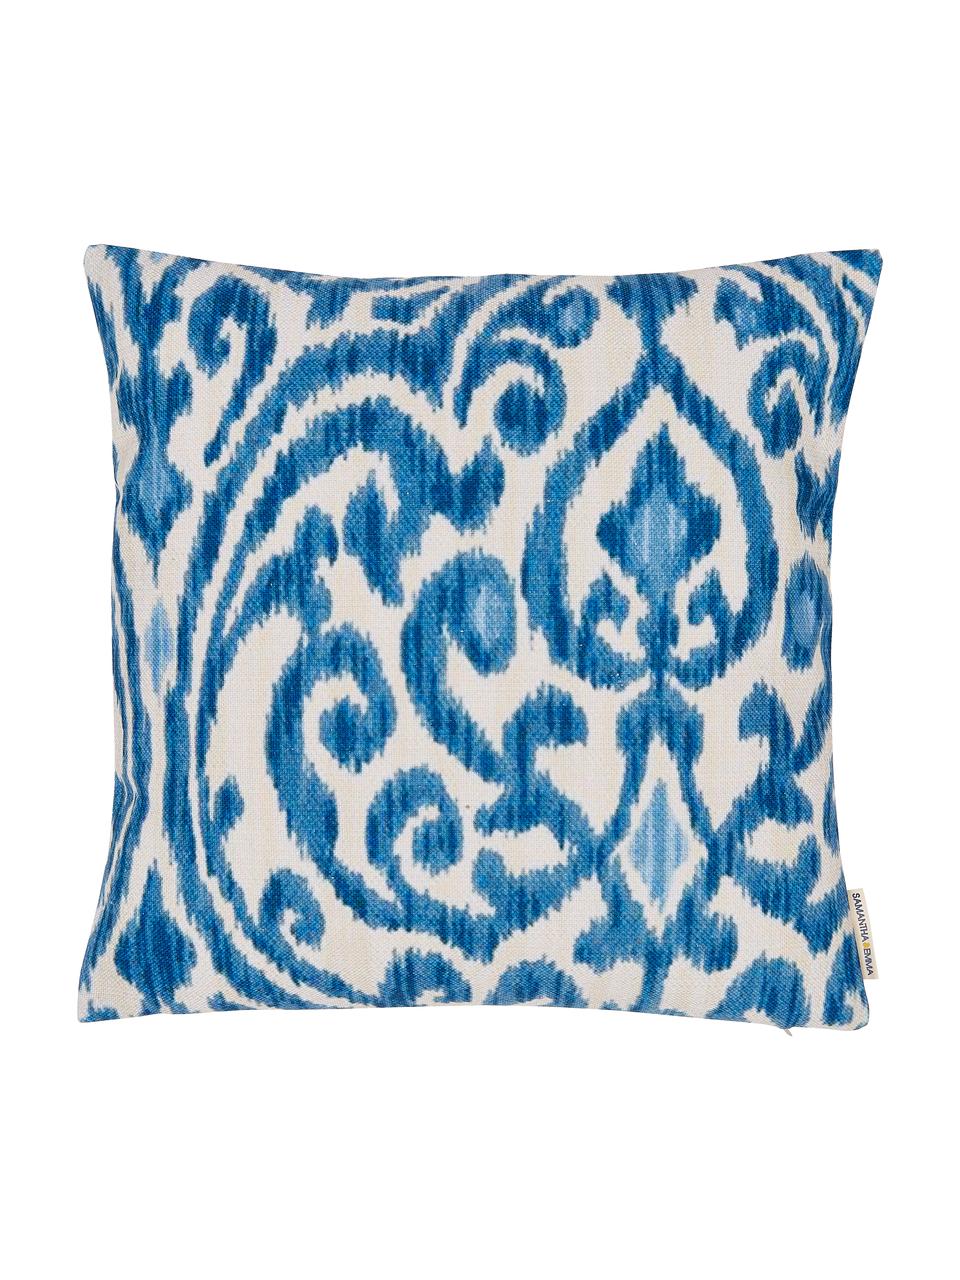 Poszewka na poduszkę z lnu Ikat Floral, 60% len, 40% bawełna, Niebieski, biały, S 45 x D 45 cm